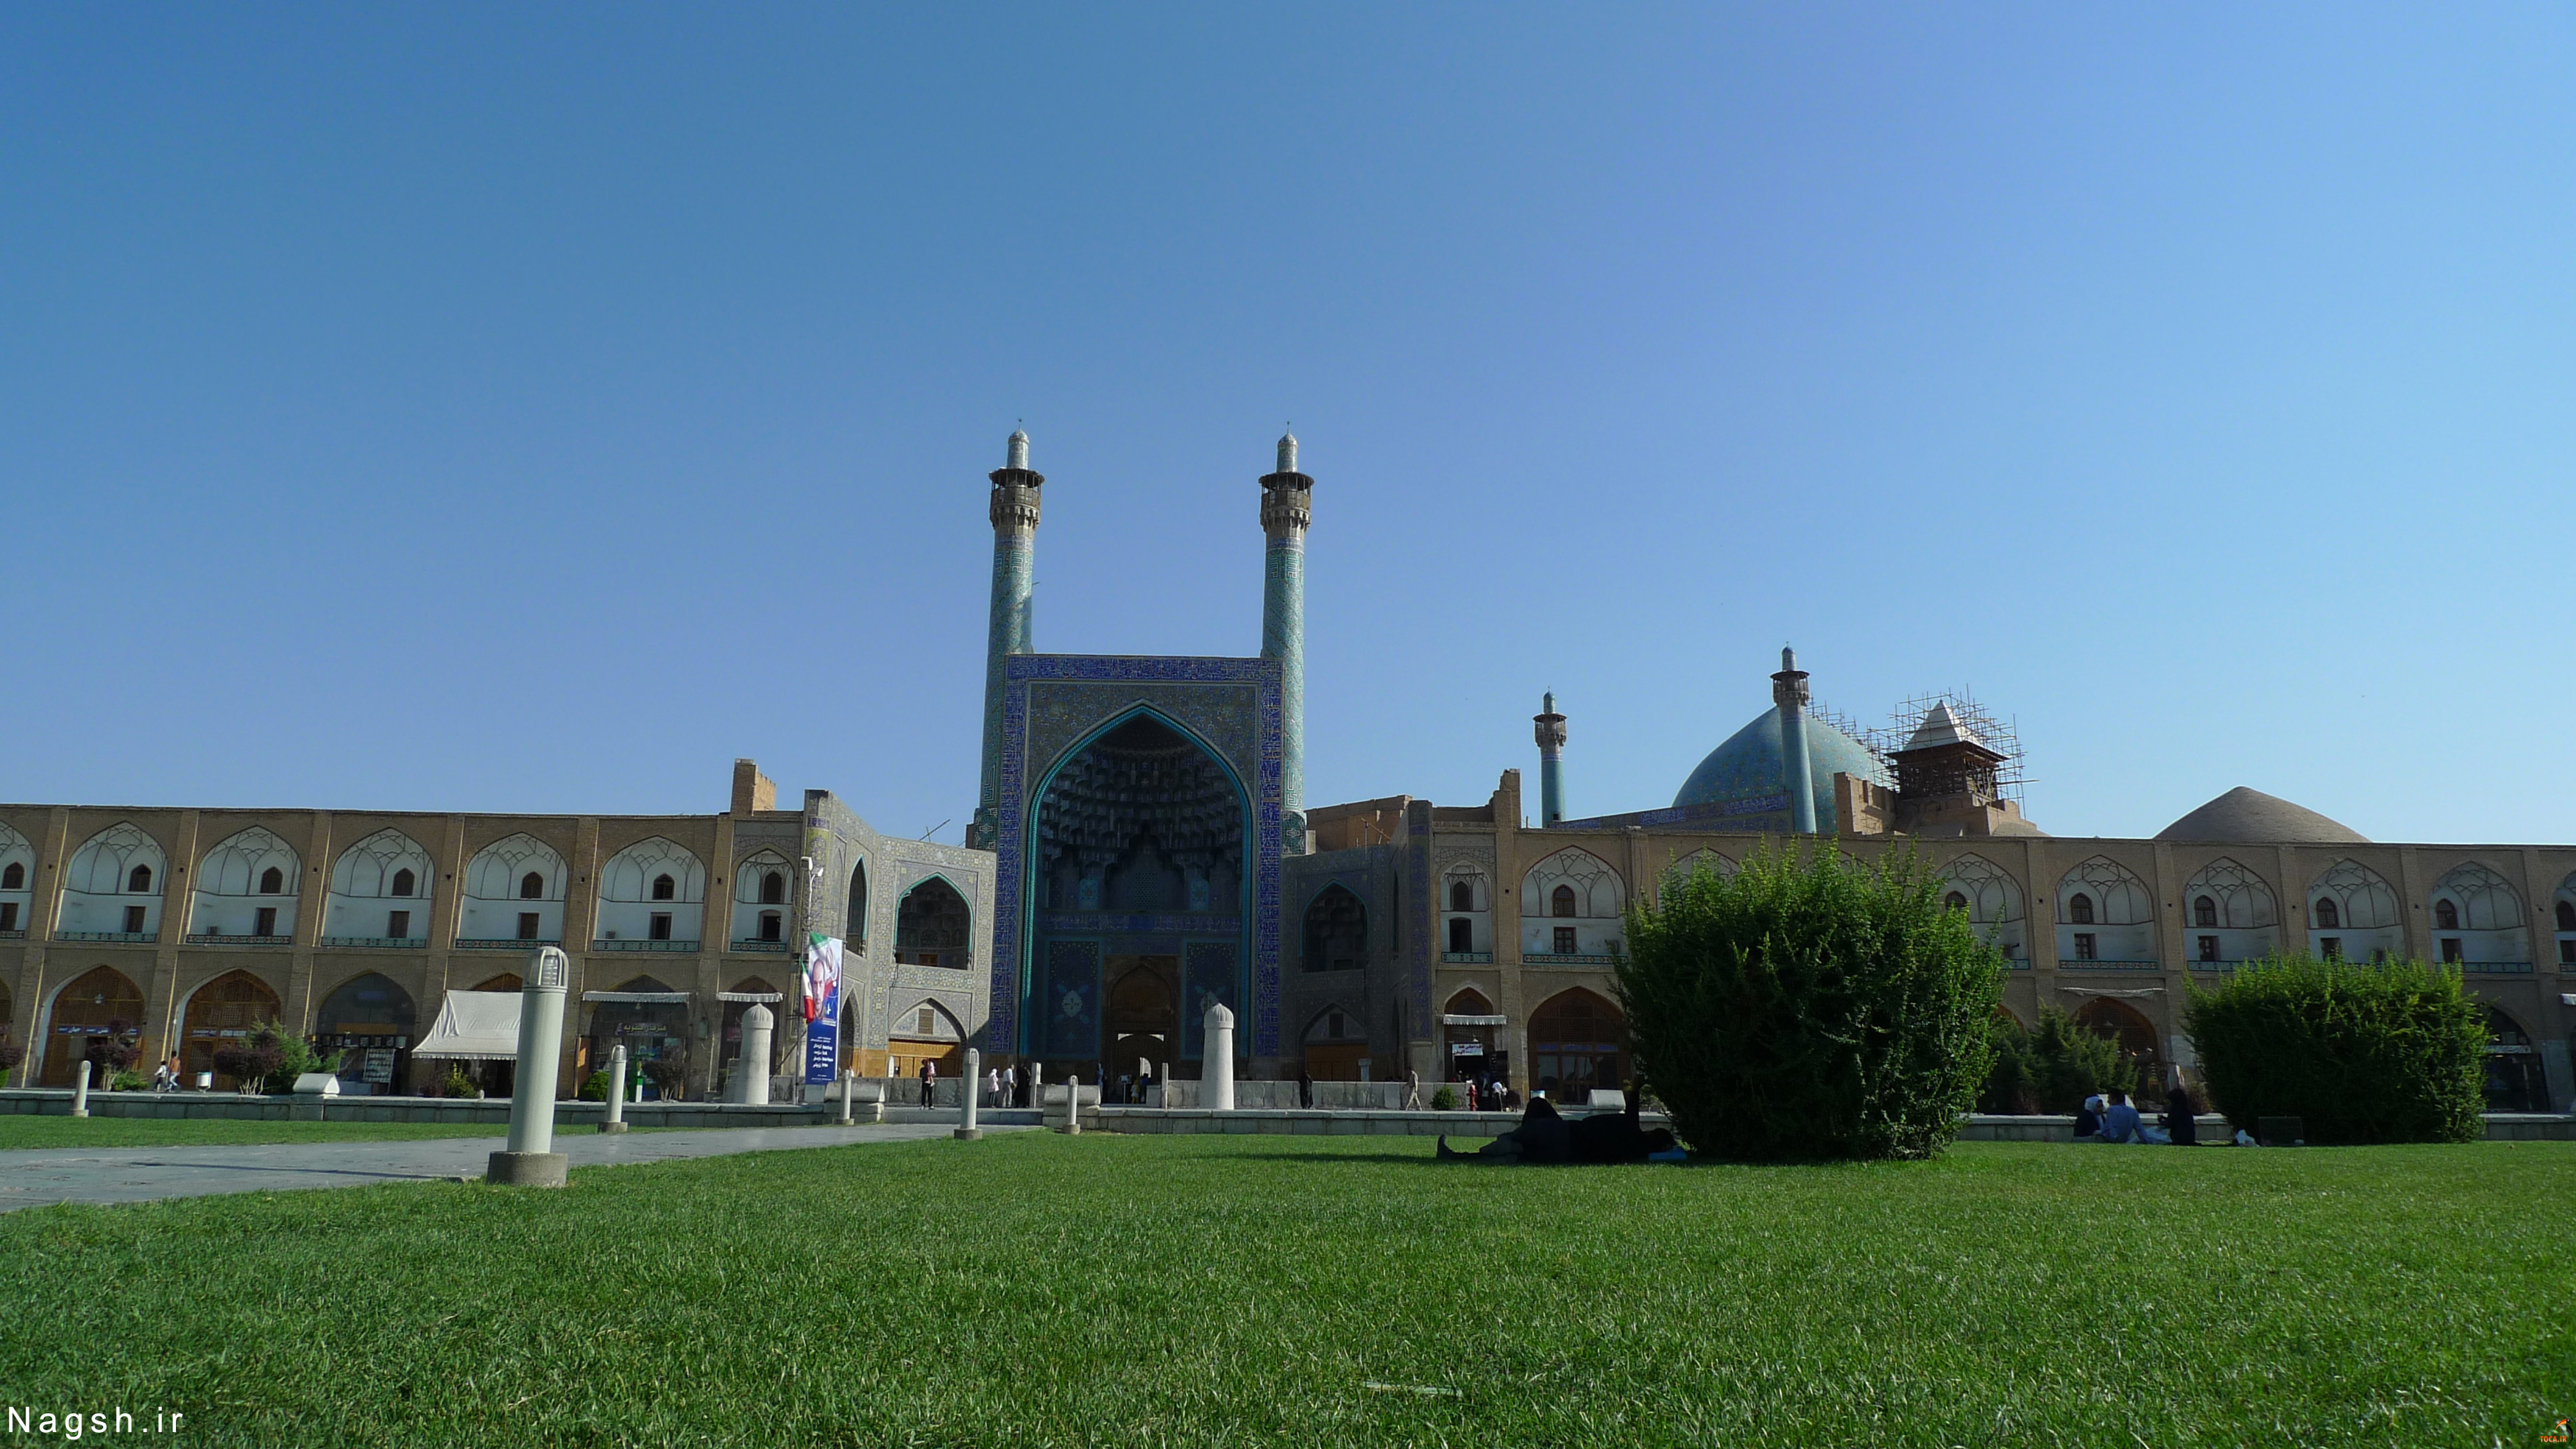 عکس با کیفیت از میدان امام اصفهان
